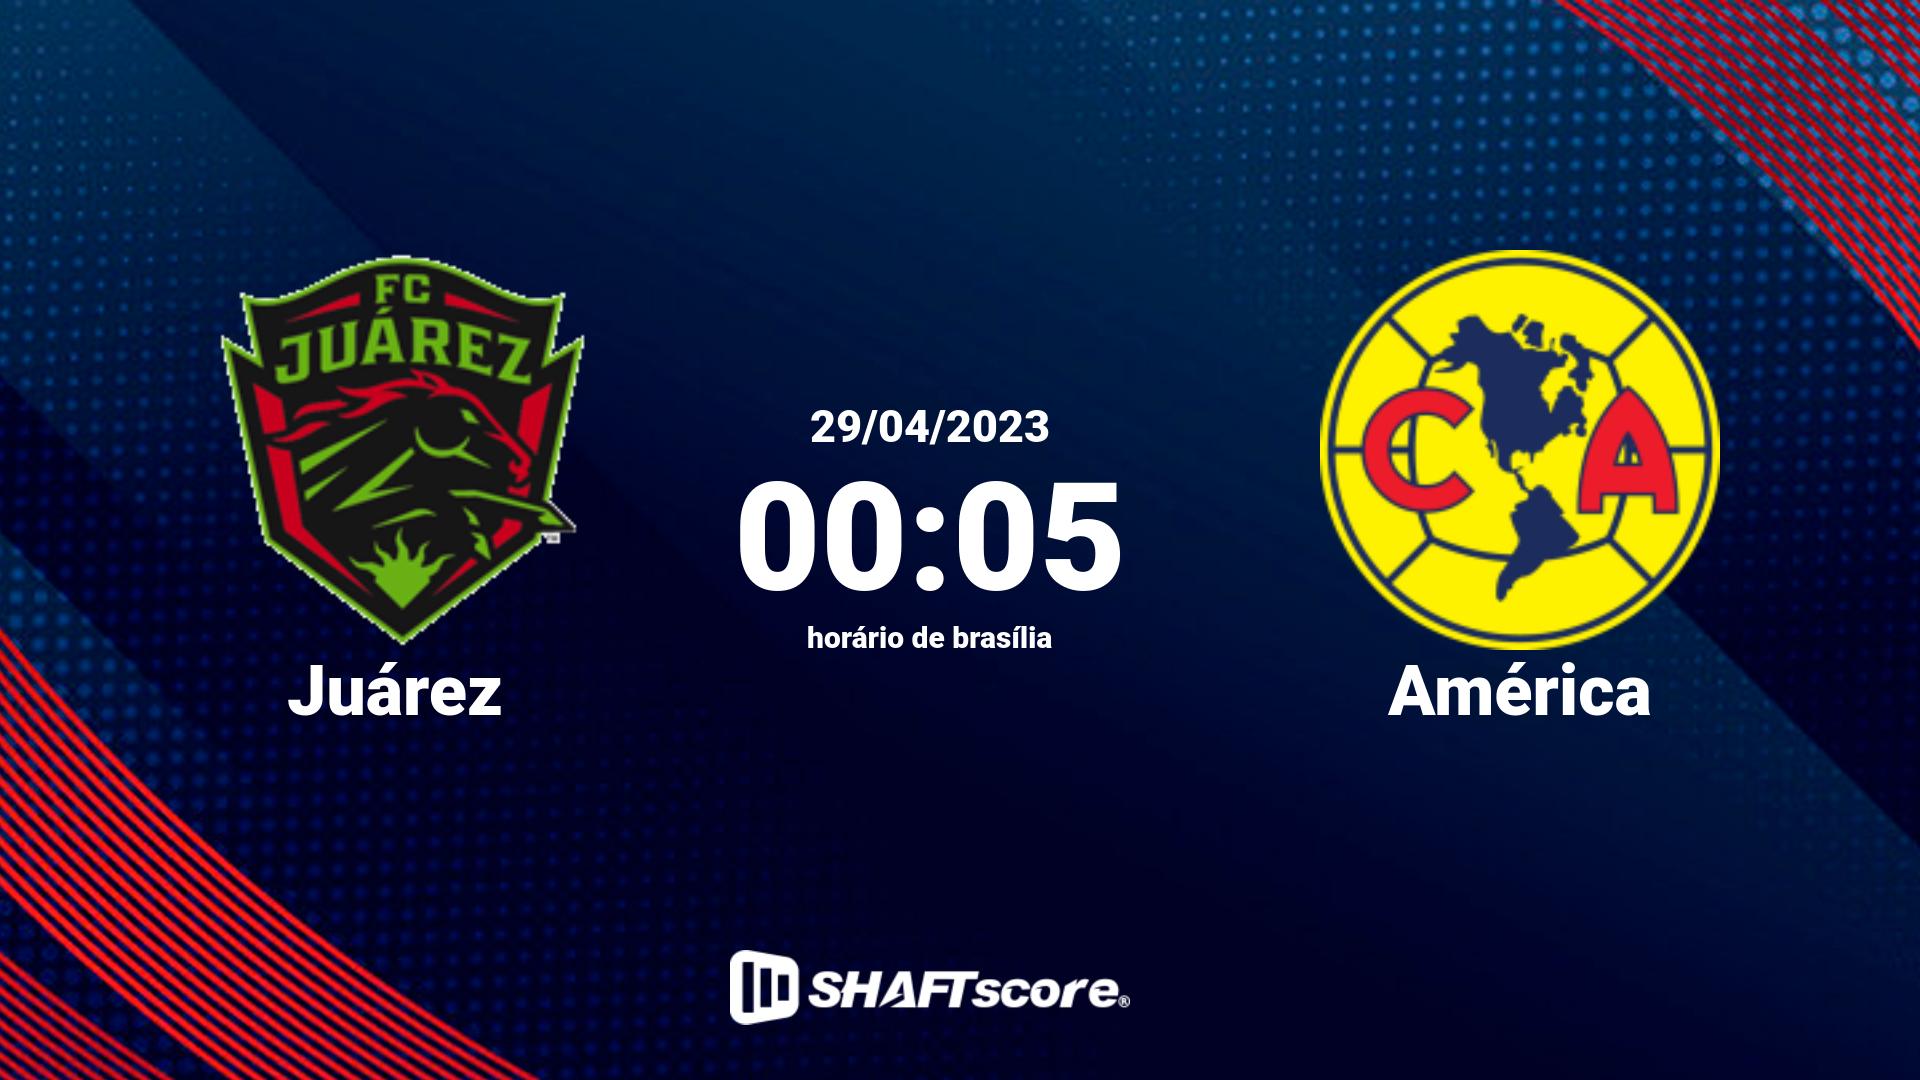 Estatísticas do jogo Juárez vs América 29.04 00:05